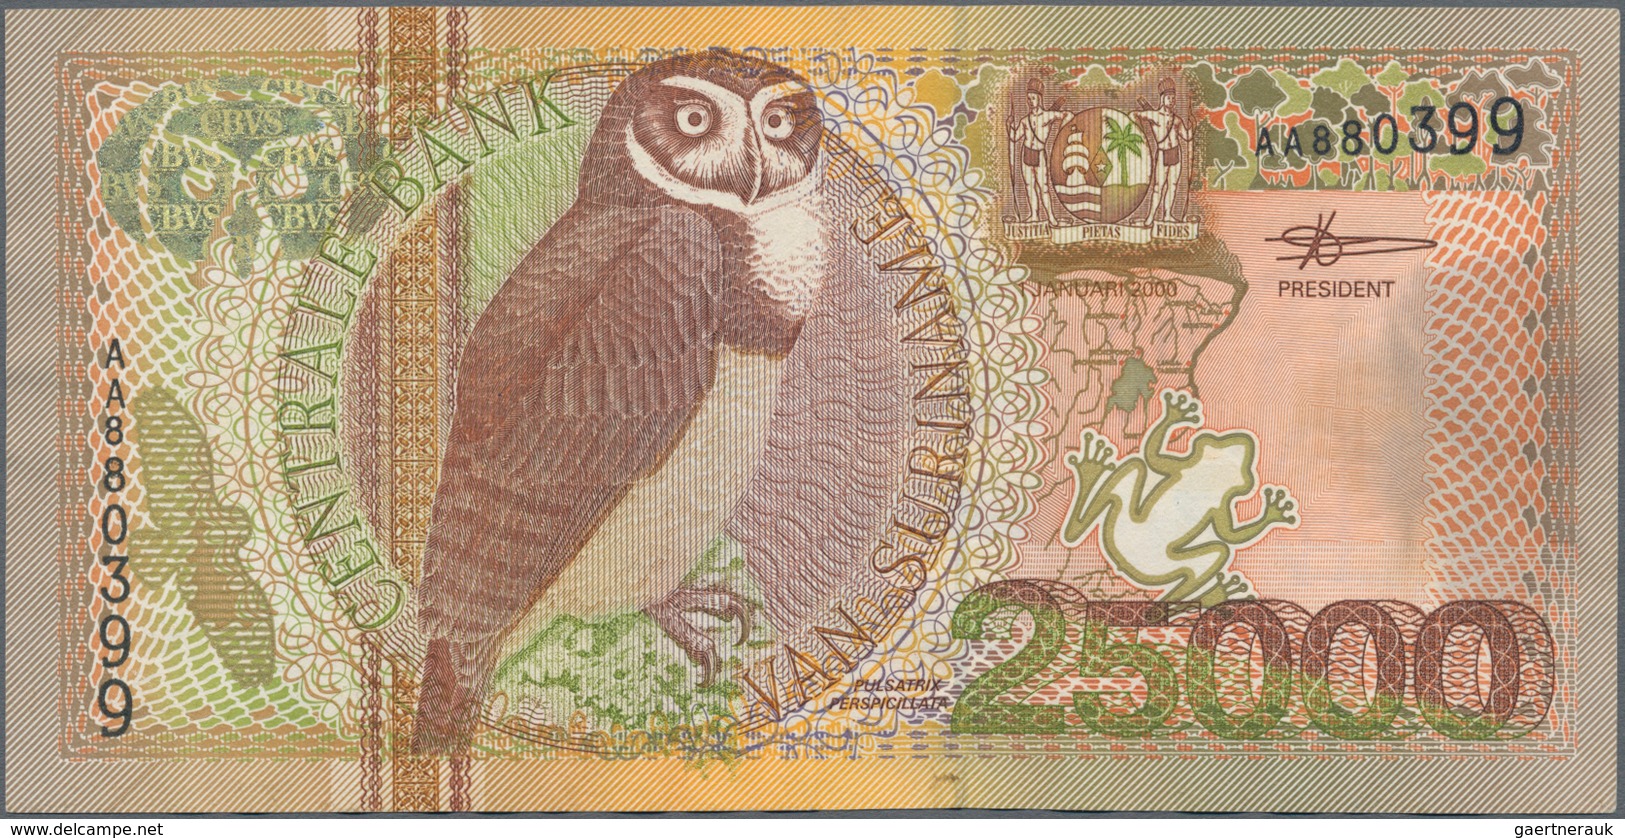 Suriname: Central Bank Van Suriname 25.000 Gulden 2000, P.154, Very Popular Banknote In Great Condit - Suriname